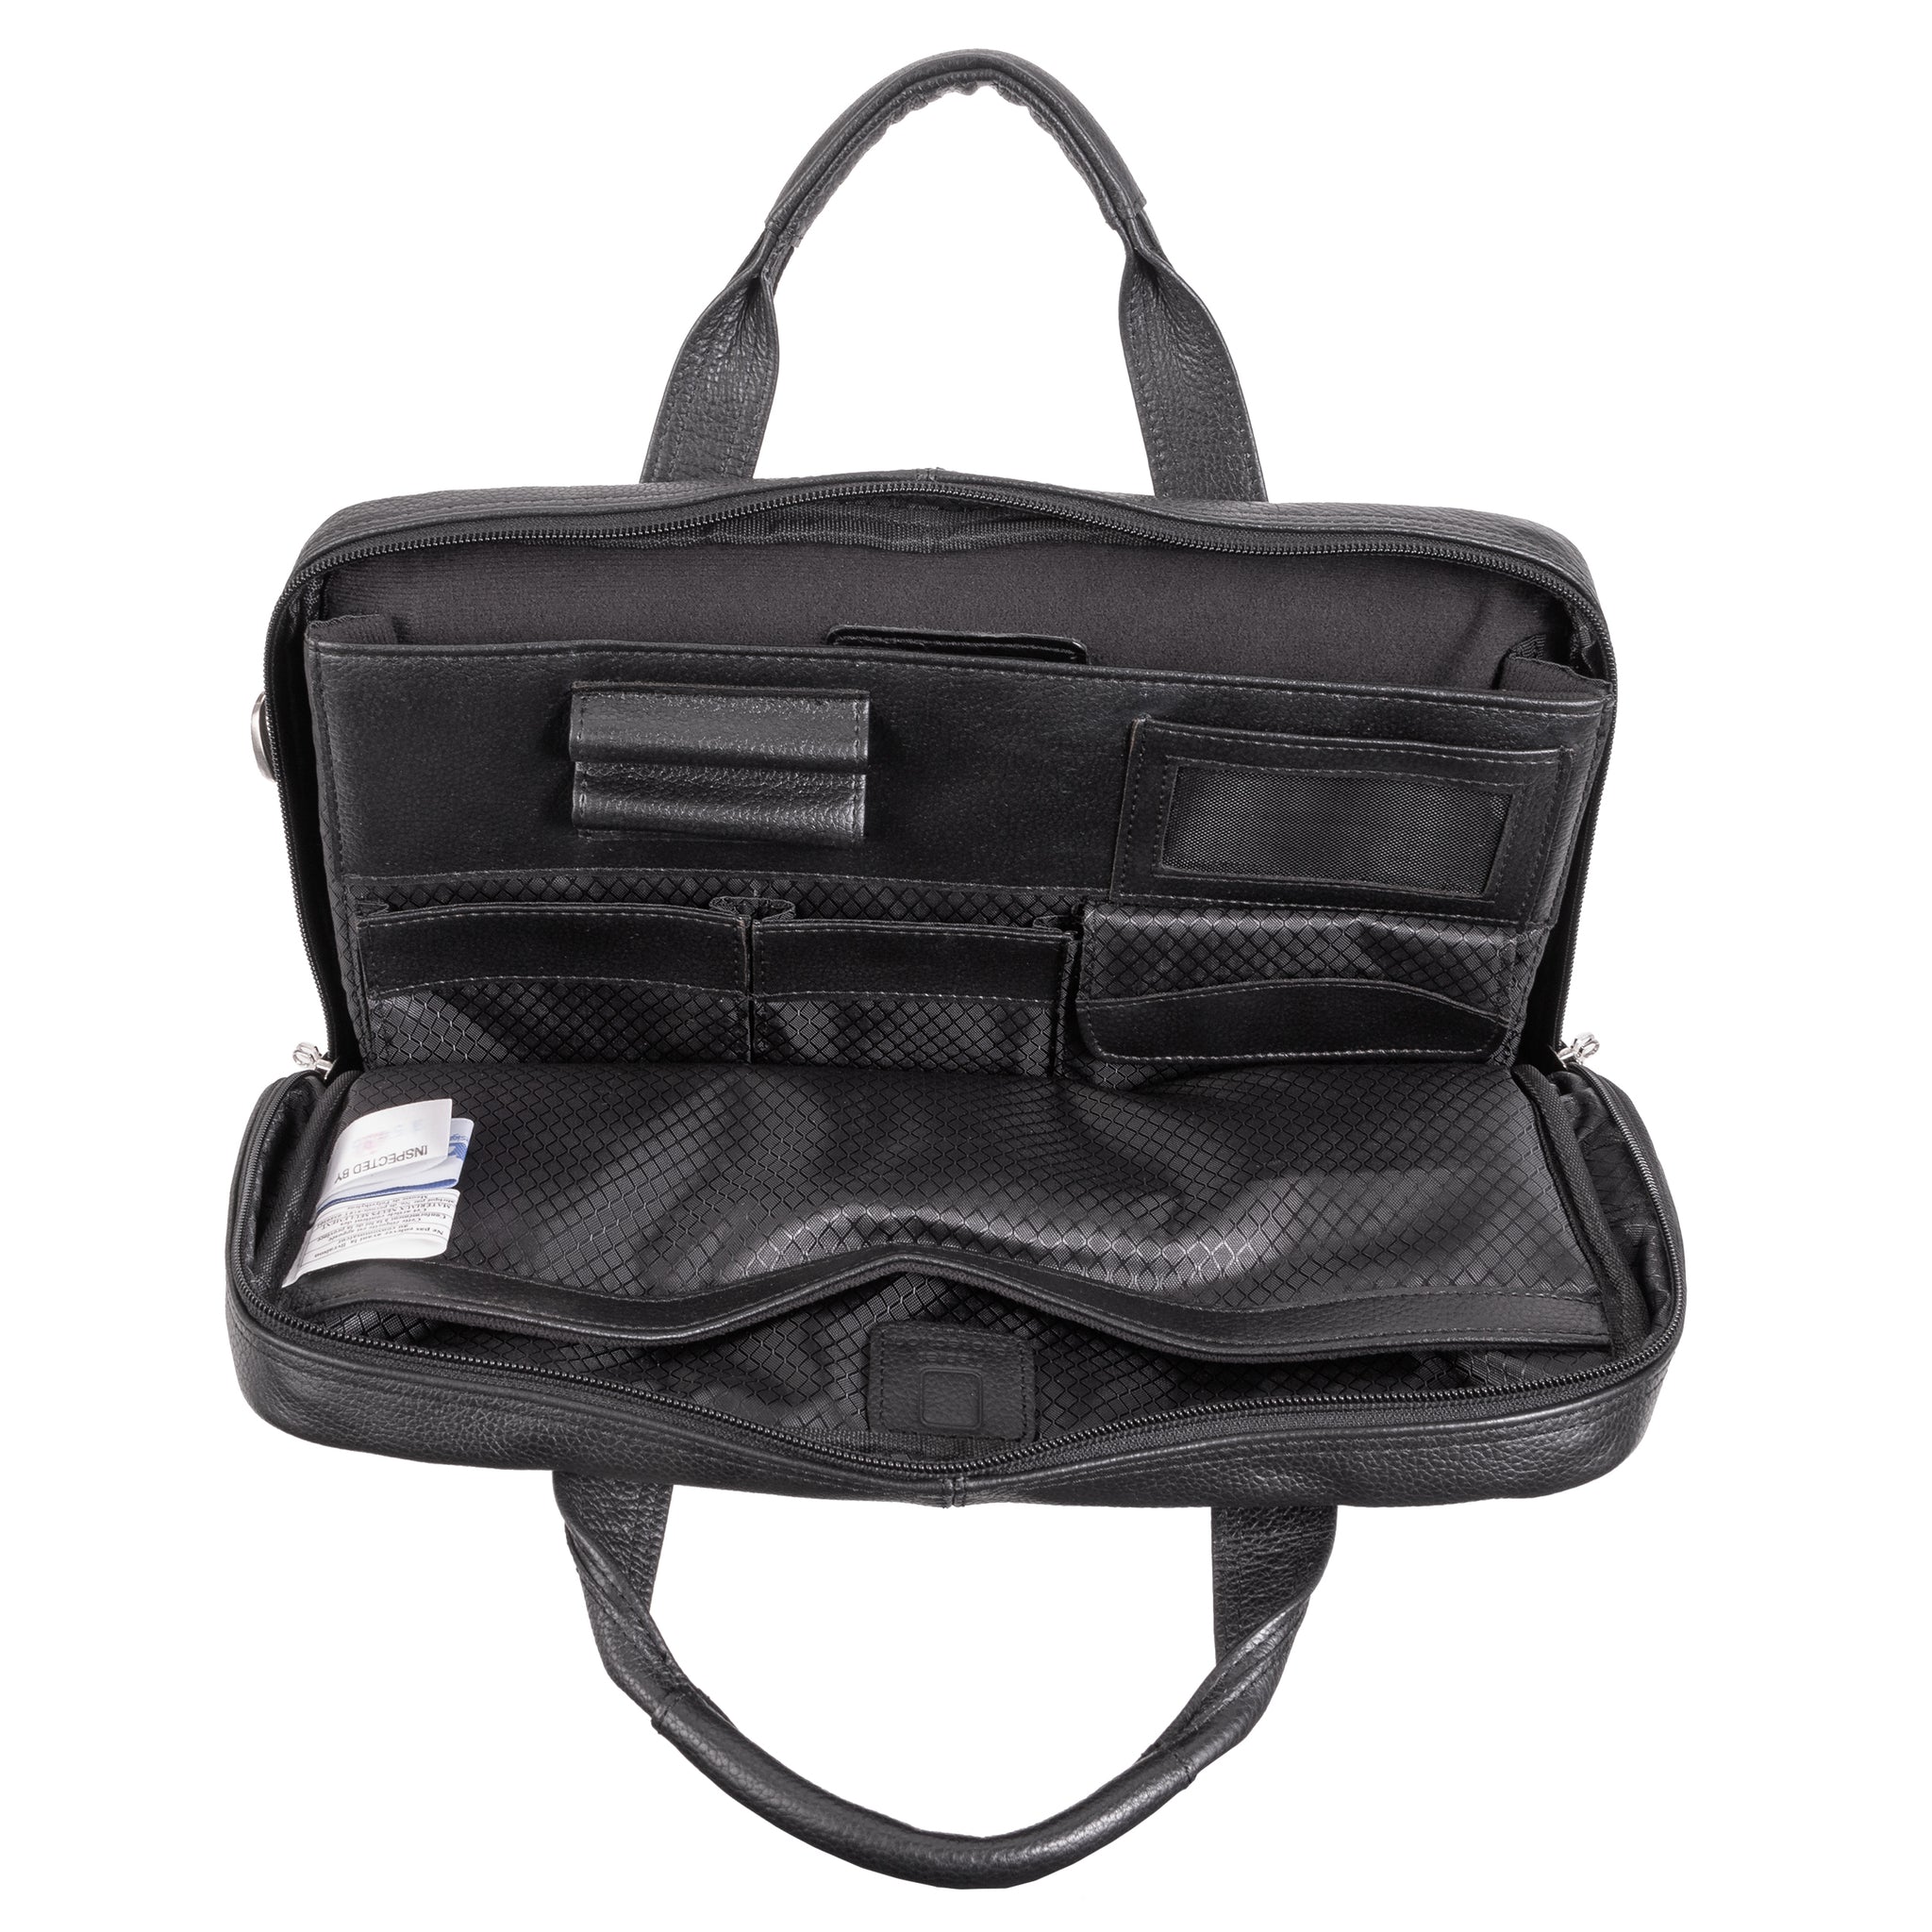 McKlein BRONZEVILLE 15" Medium Leather Laptop & Tablet Briefcase